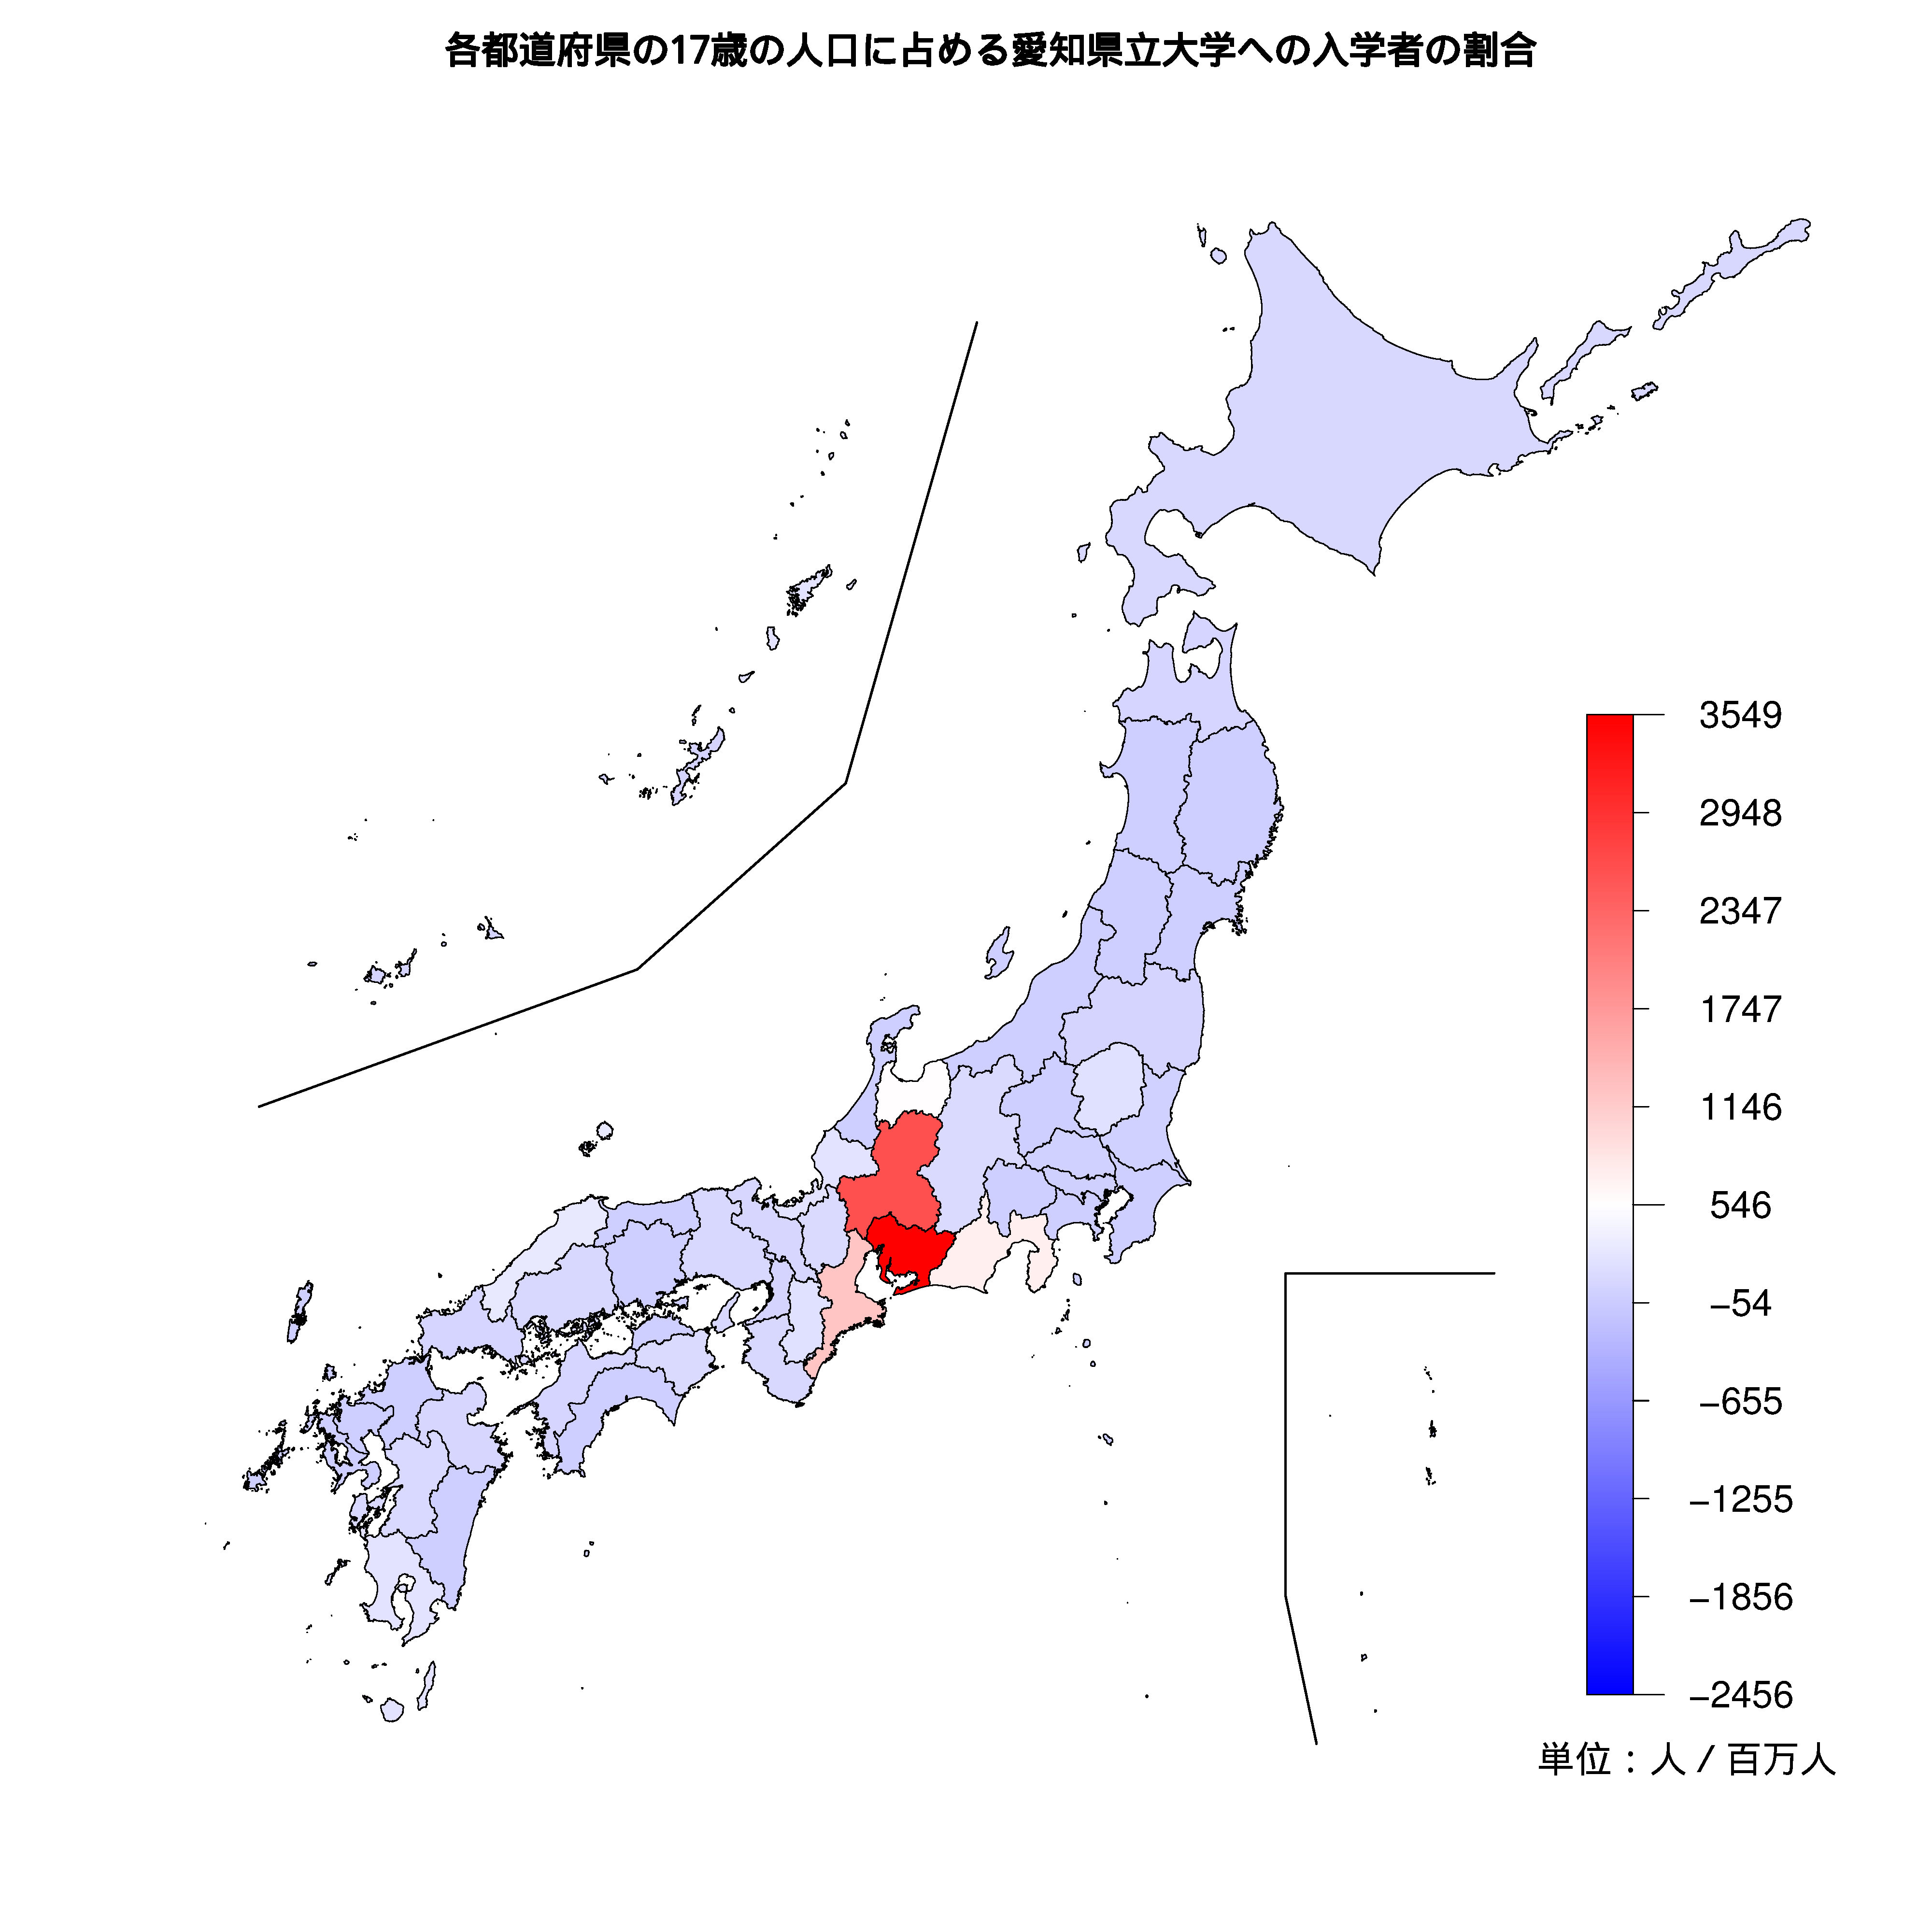 愛知県立大学への入学者が多い都道府県の色分け地図